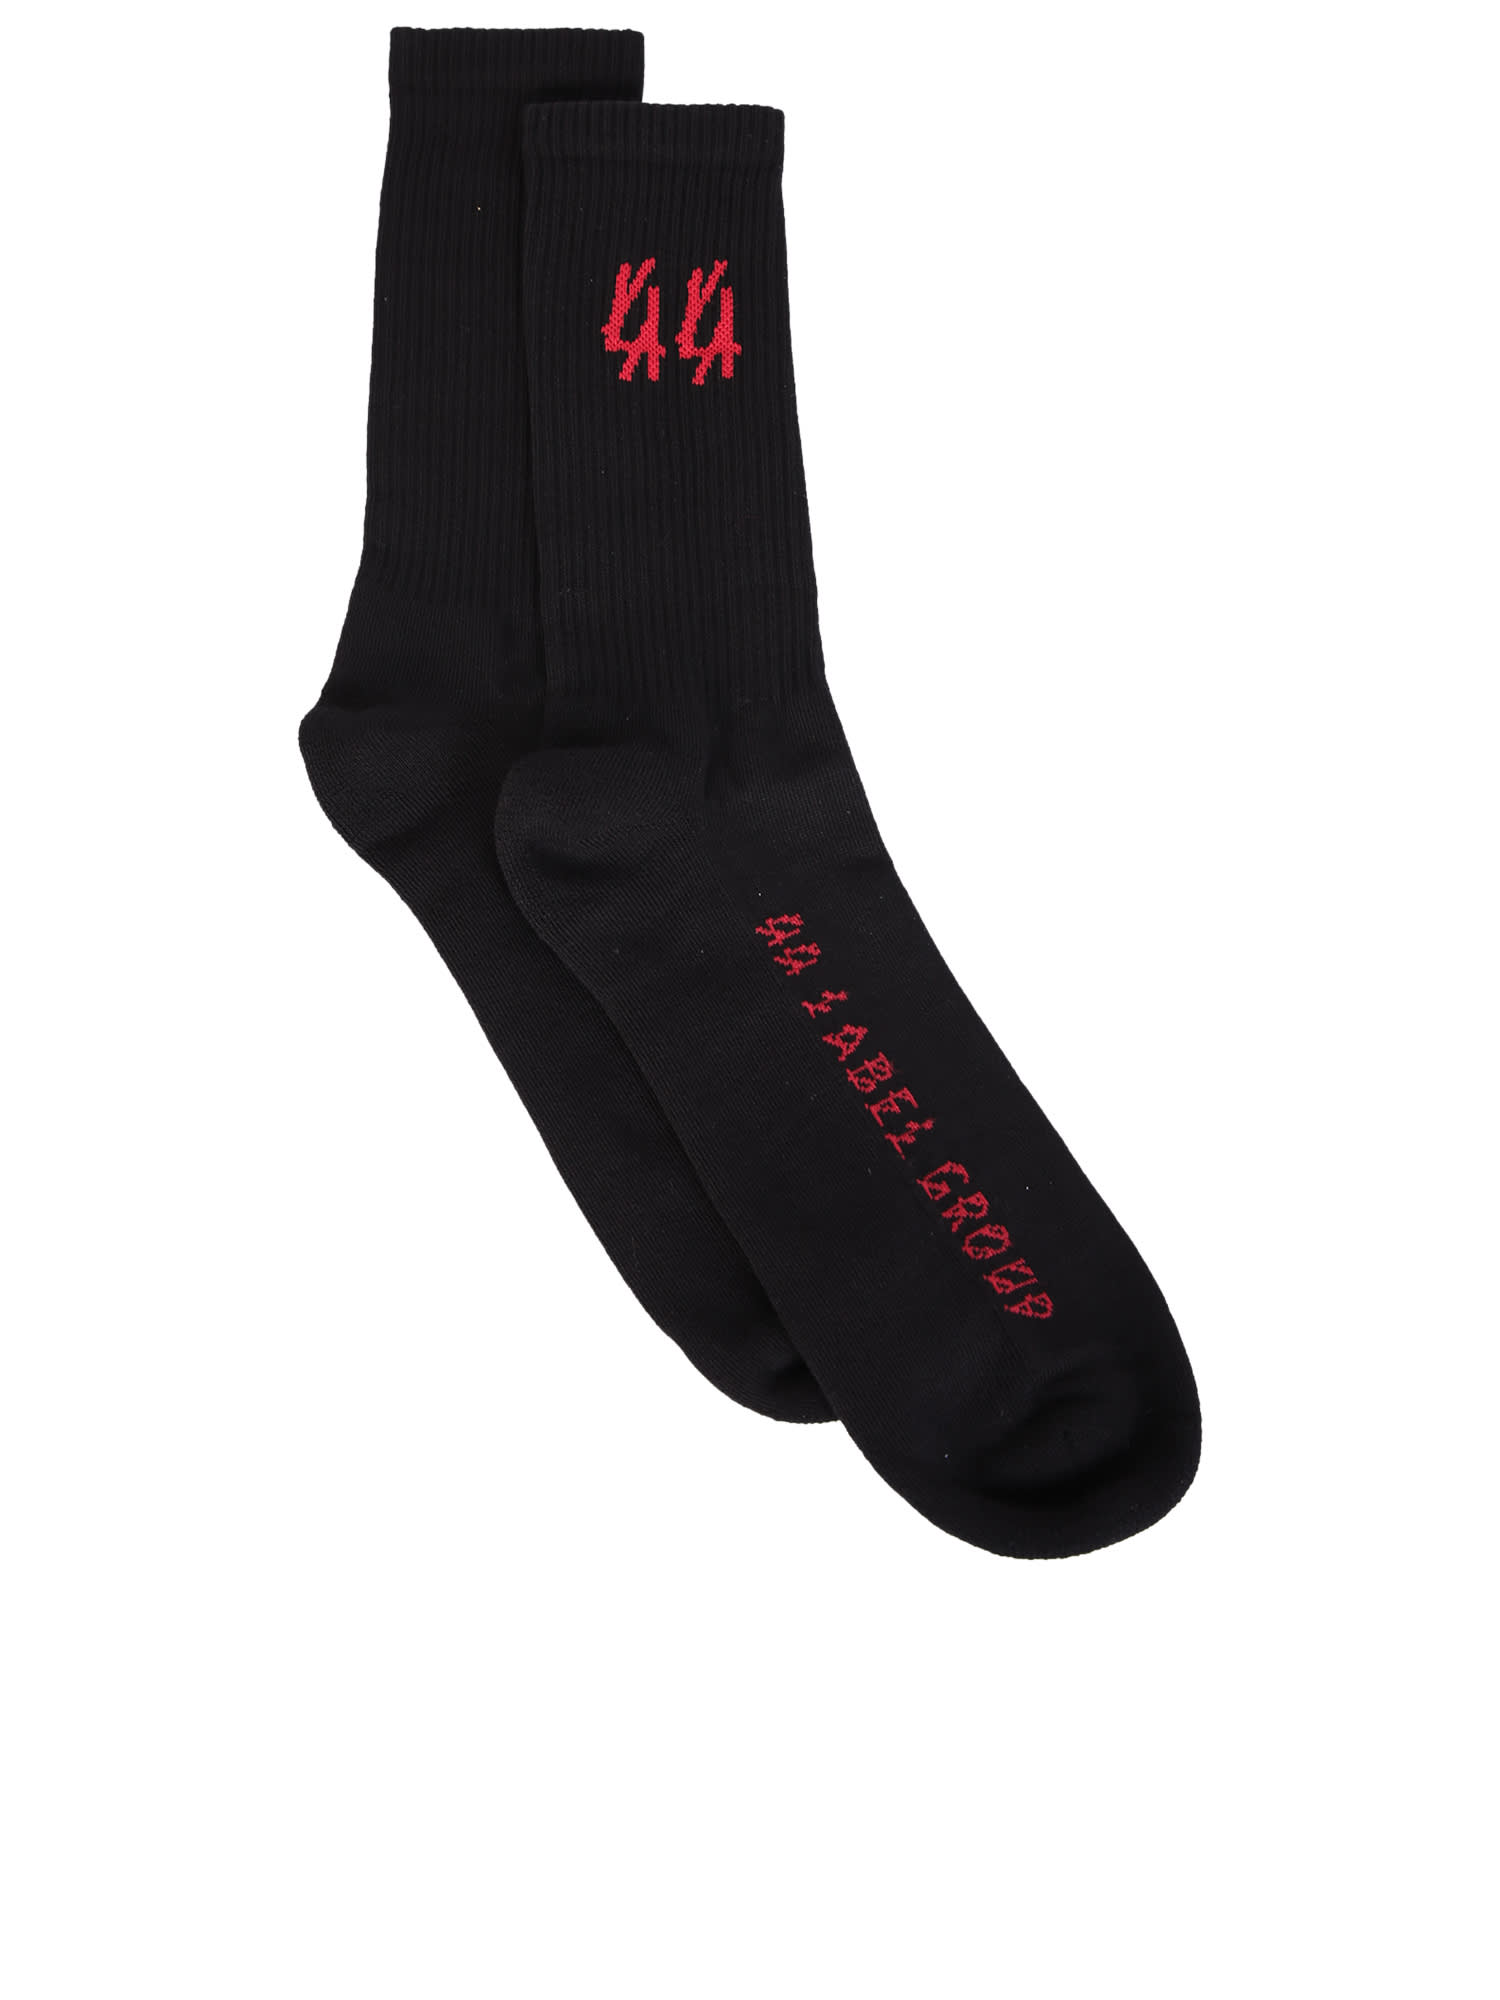 44 Label Group Socks Black/ Red